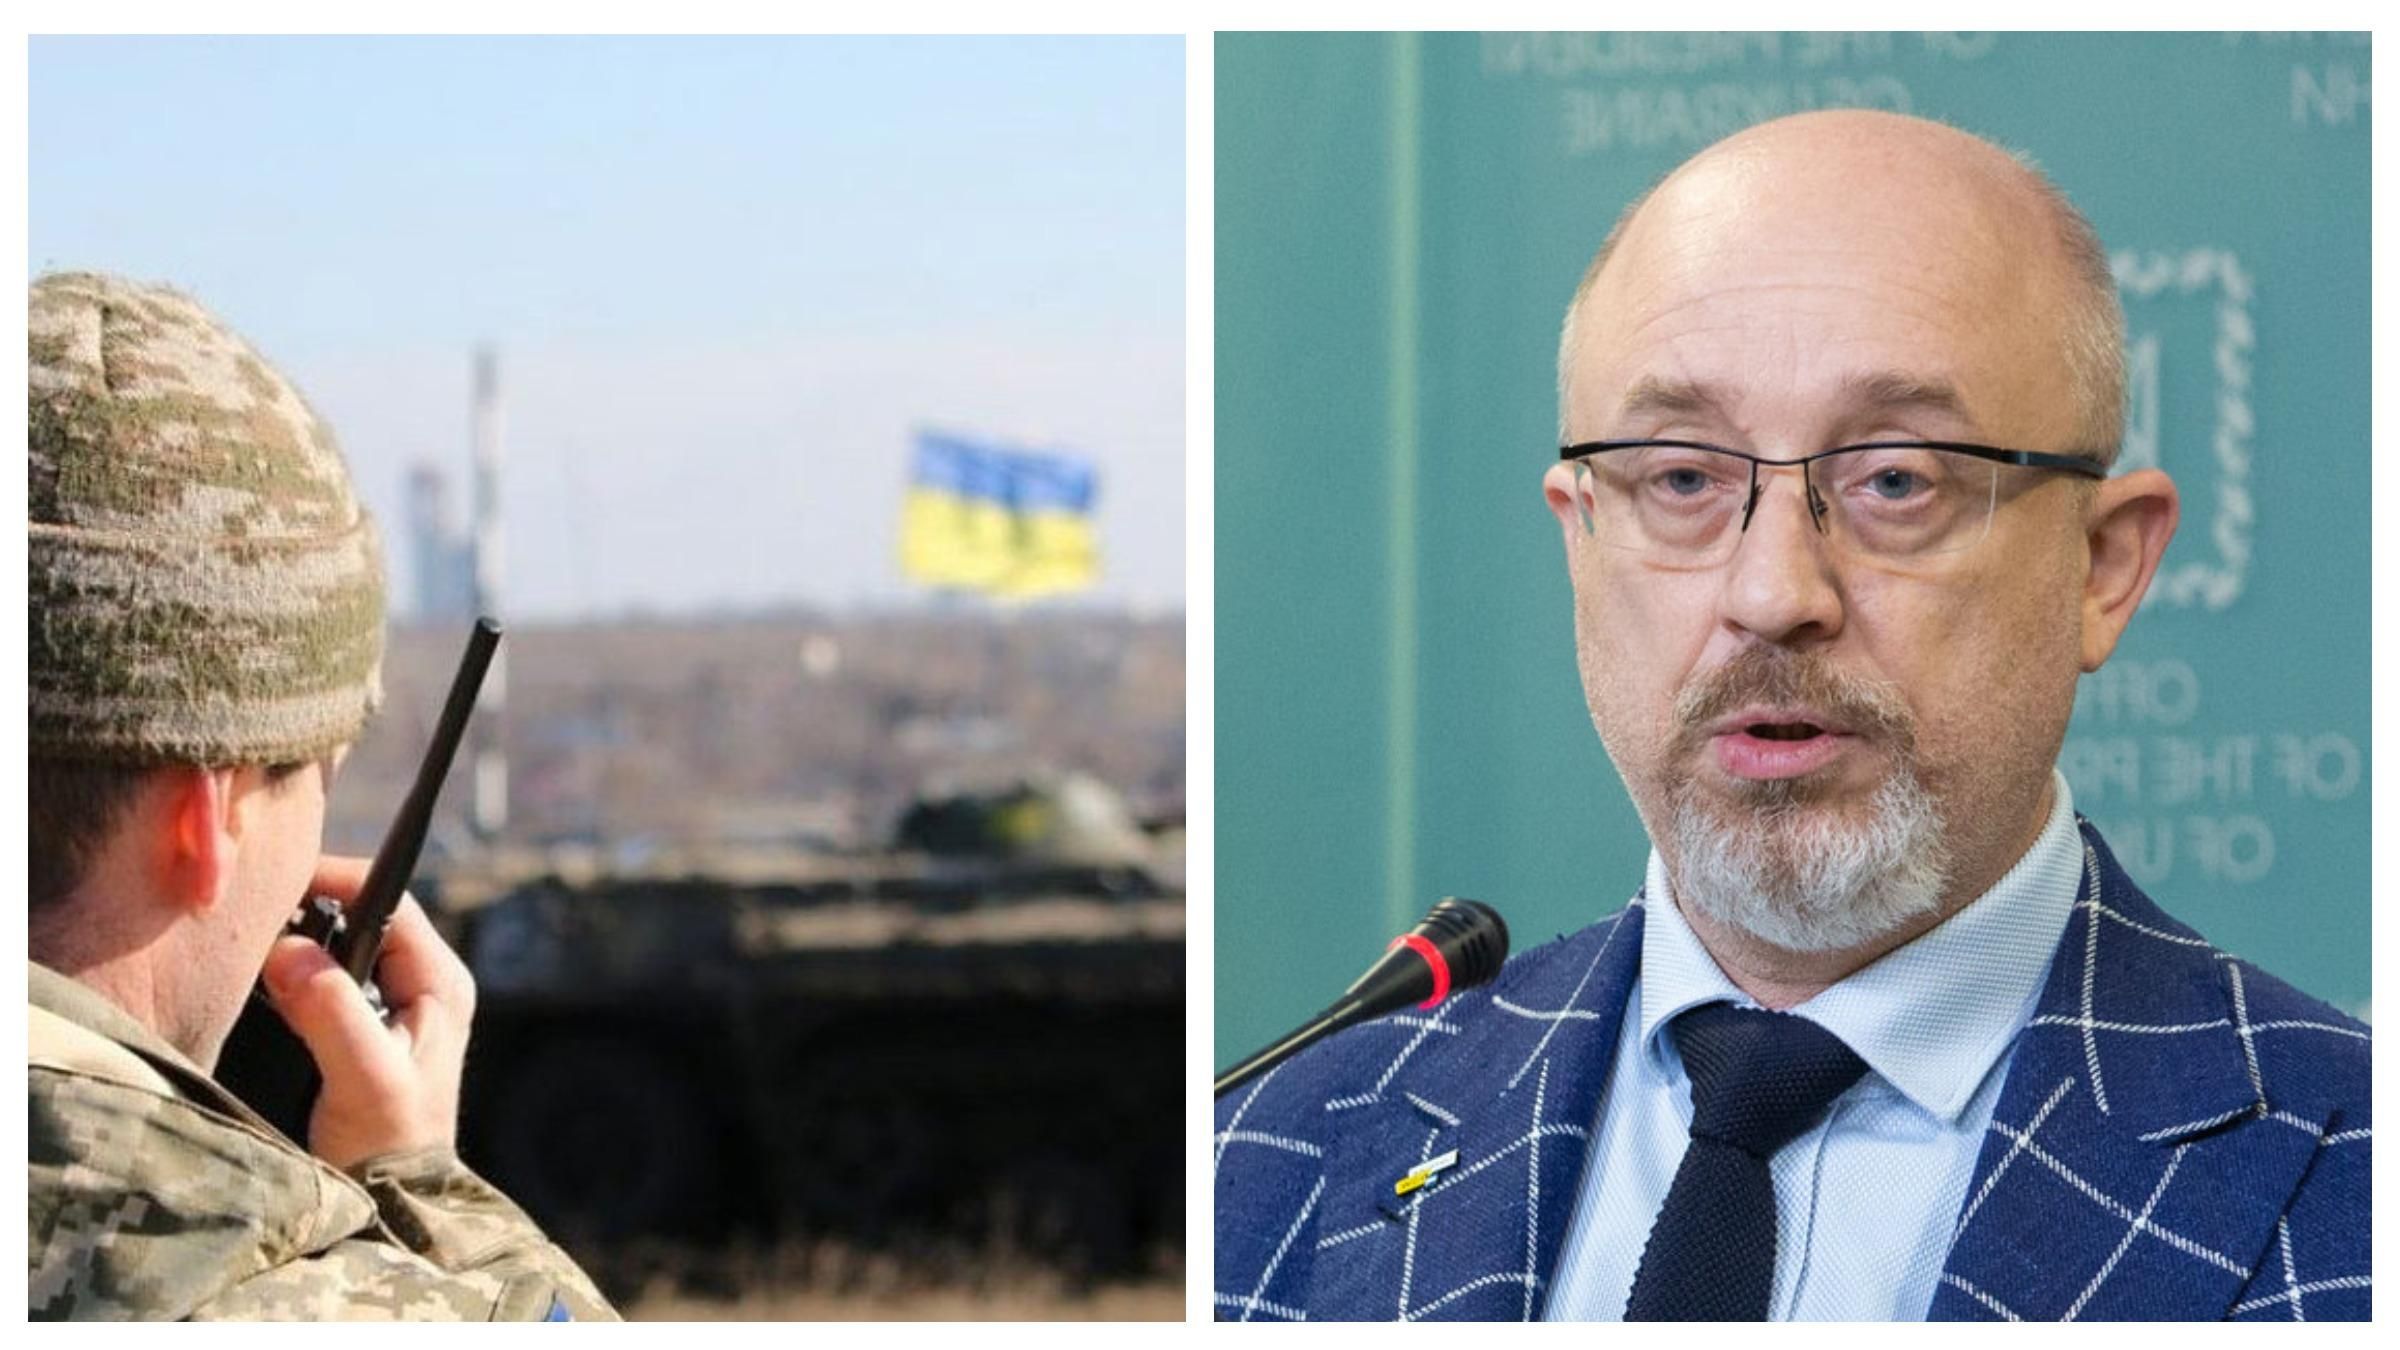 Разведения сил: Резников назвал ближайшие действия власти на Донбассе